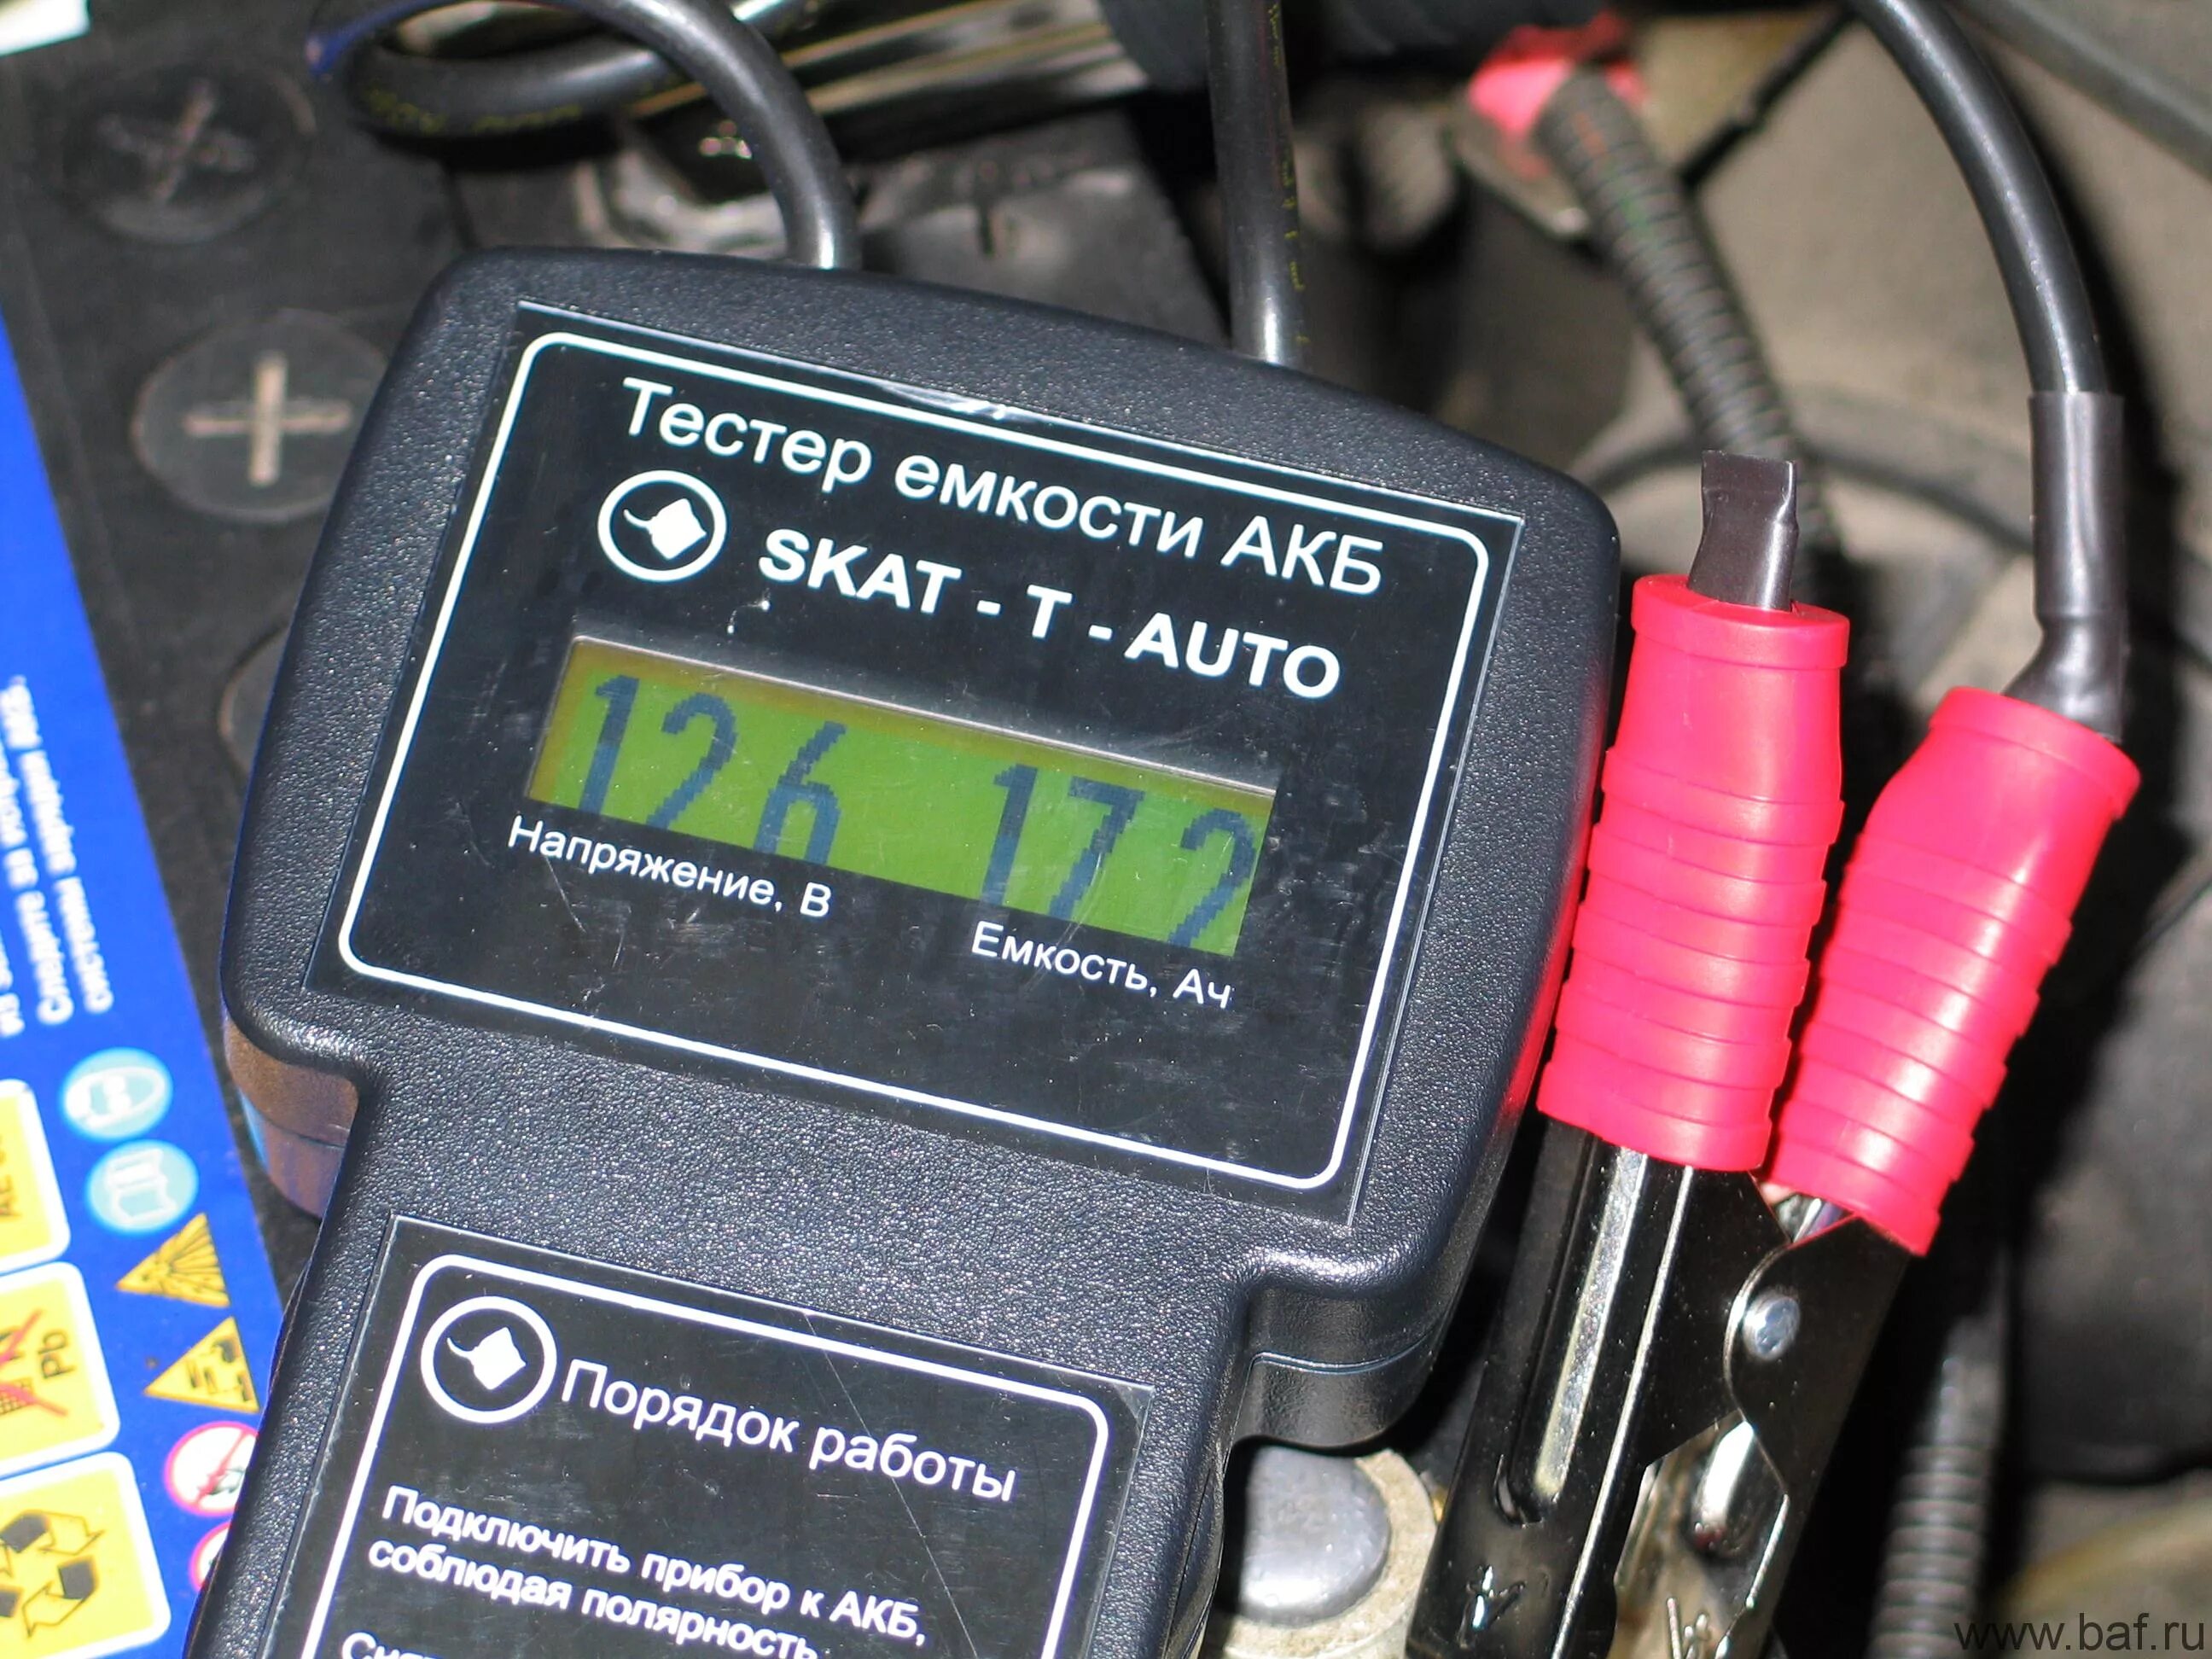 Емкость батареи аккумуляторов. Тестер ёмкости АКБ Skat-t-auto. Тестер емкости аккумулятора Skat t. Мультиметр для проверки ёмкости АКБ автомобиля 12в. Тестер емкости аккумулятора "Калибр".